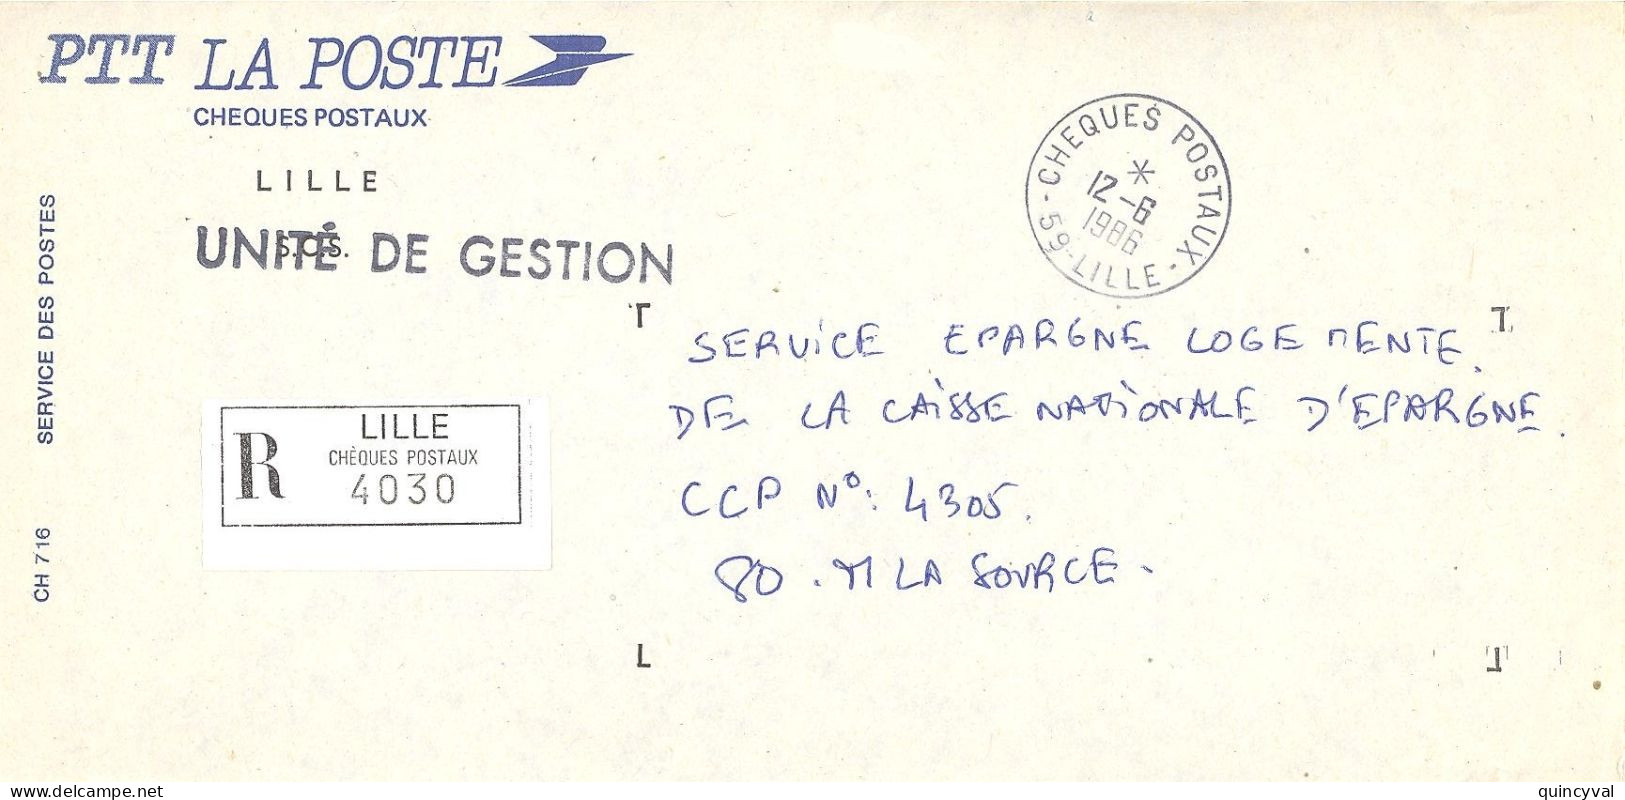 CHEQUES POSTAUX  59 LILLE Ob 12 6 1986 Lettre Enveloppe CCP Chèques Postaux RECOMMANDE UNITE De GESTION - Handstempel